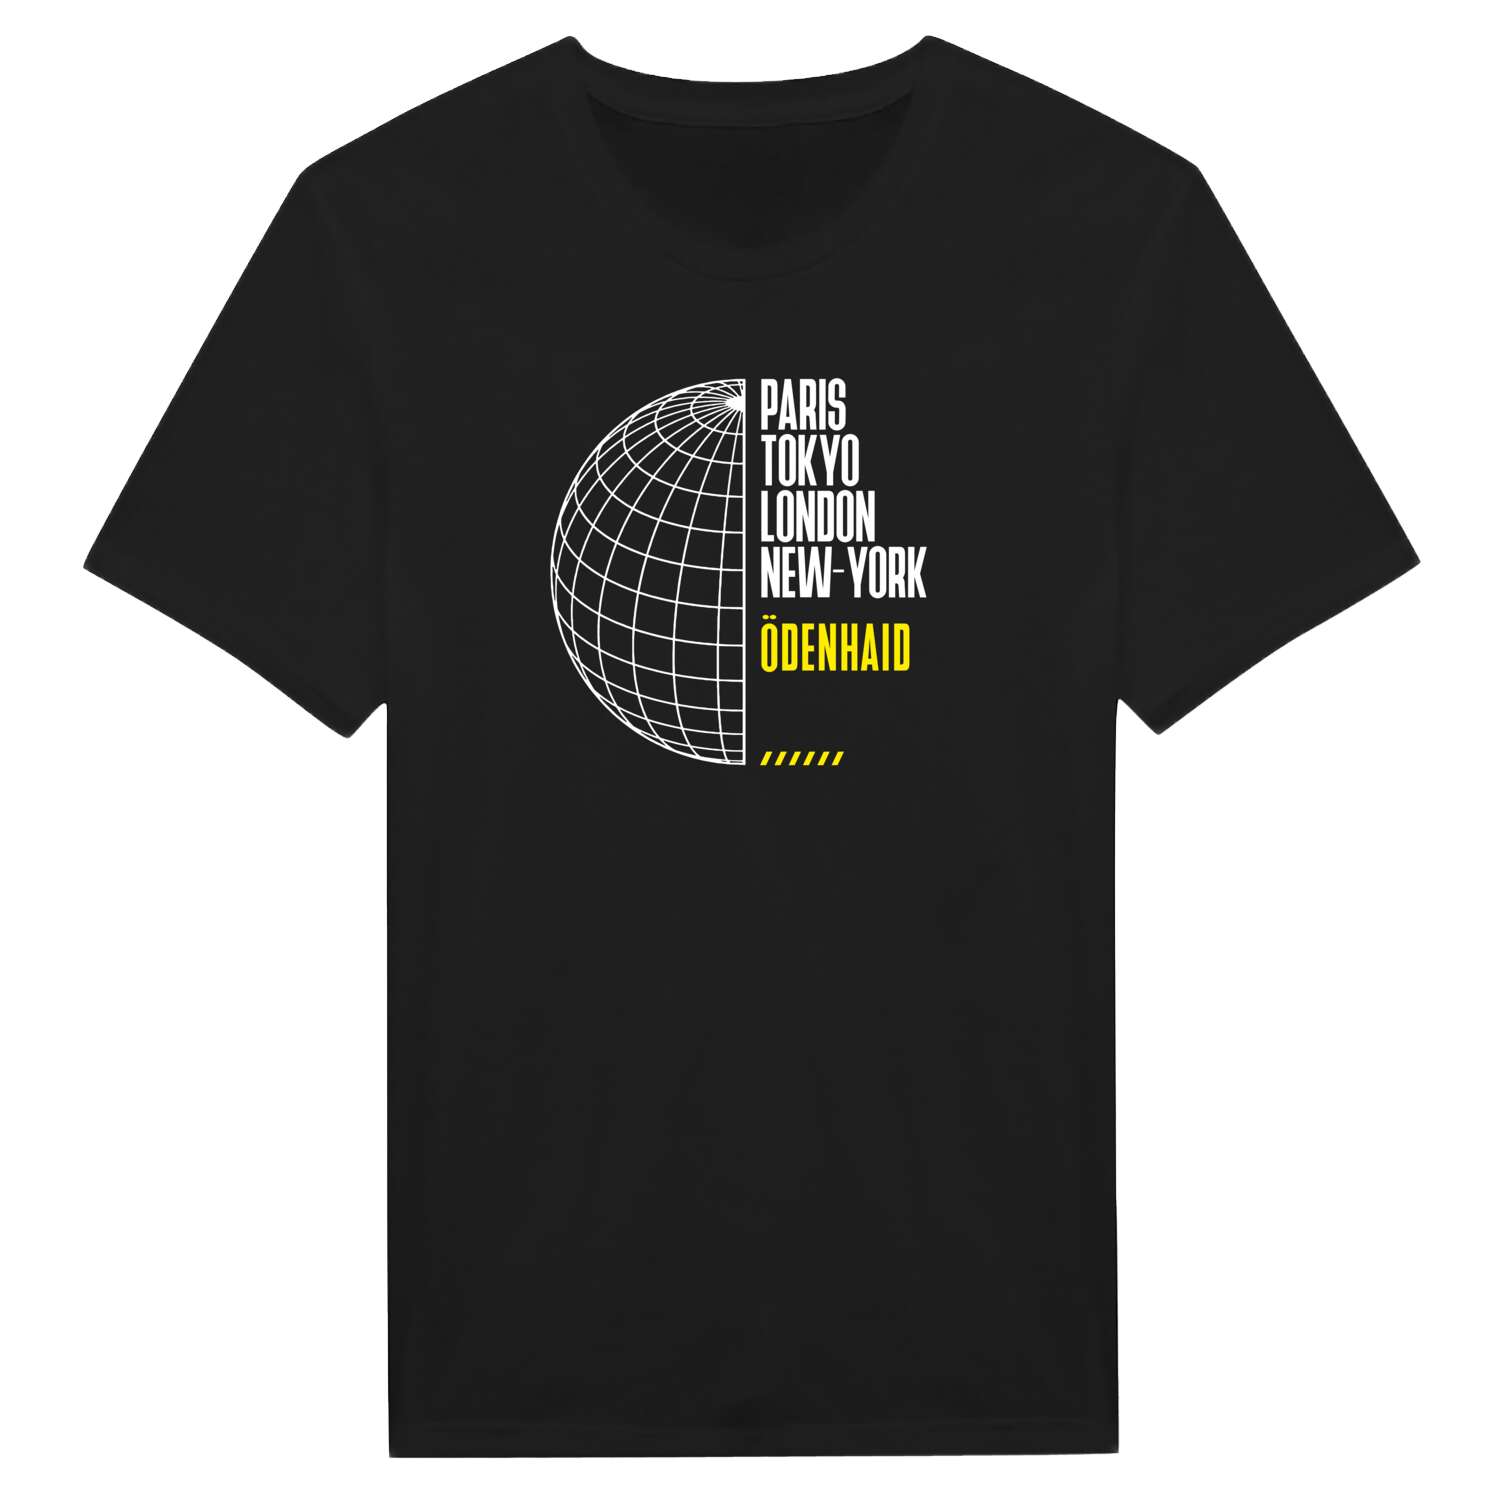 Ödenhaid T-Shirt »Paris Tokyo London«